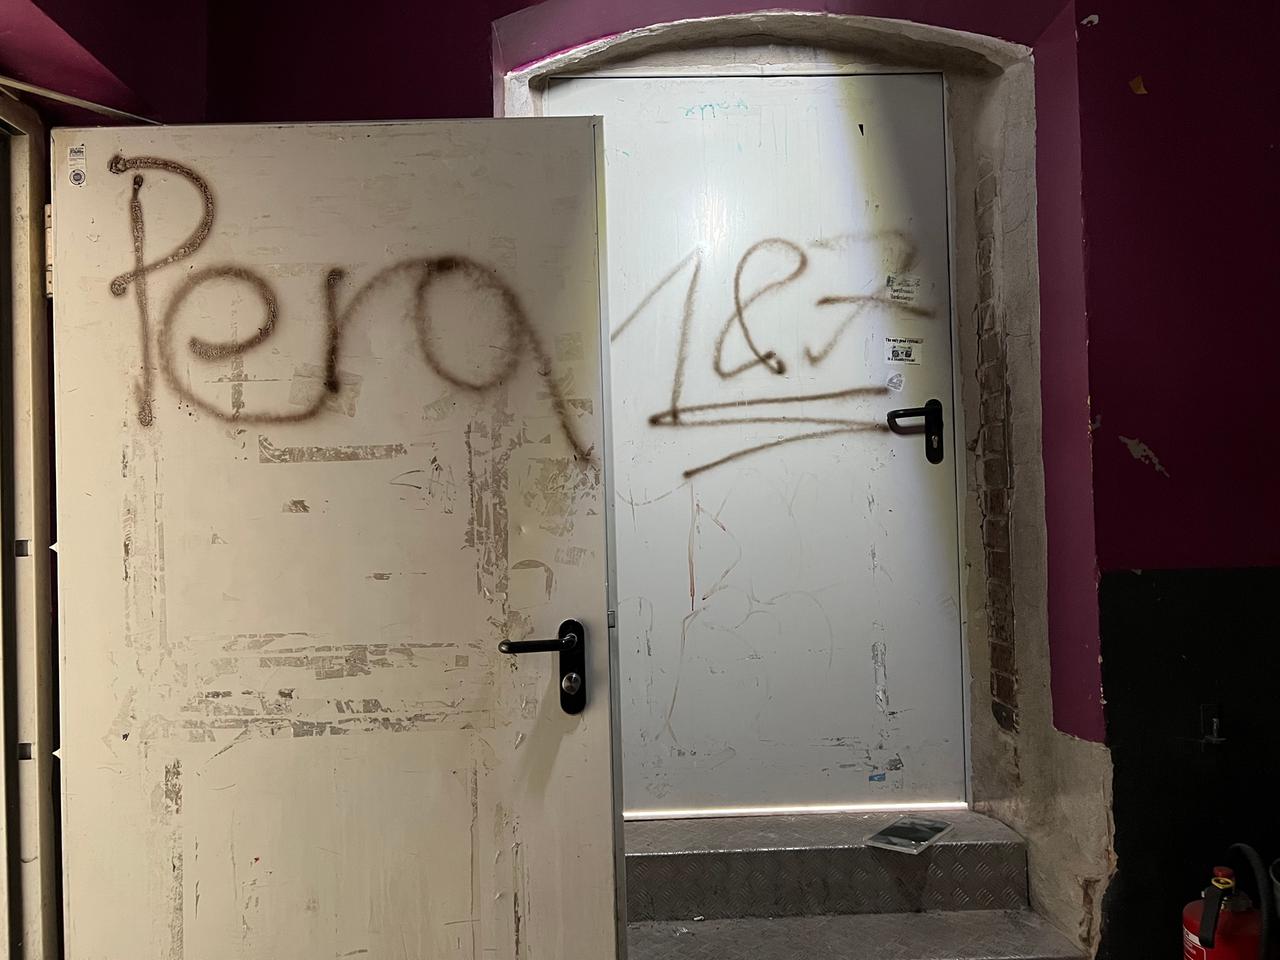 An Türen gesprüht steht: Pera und 187.